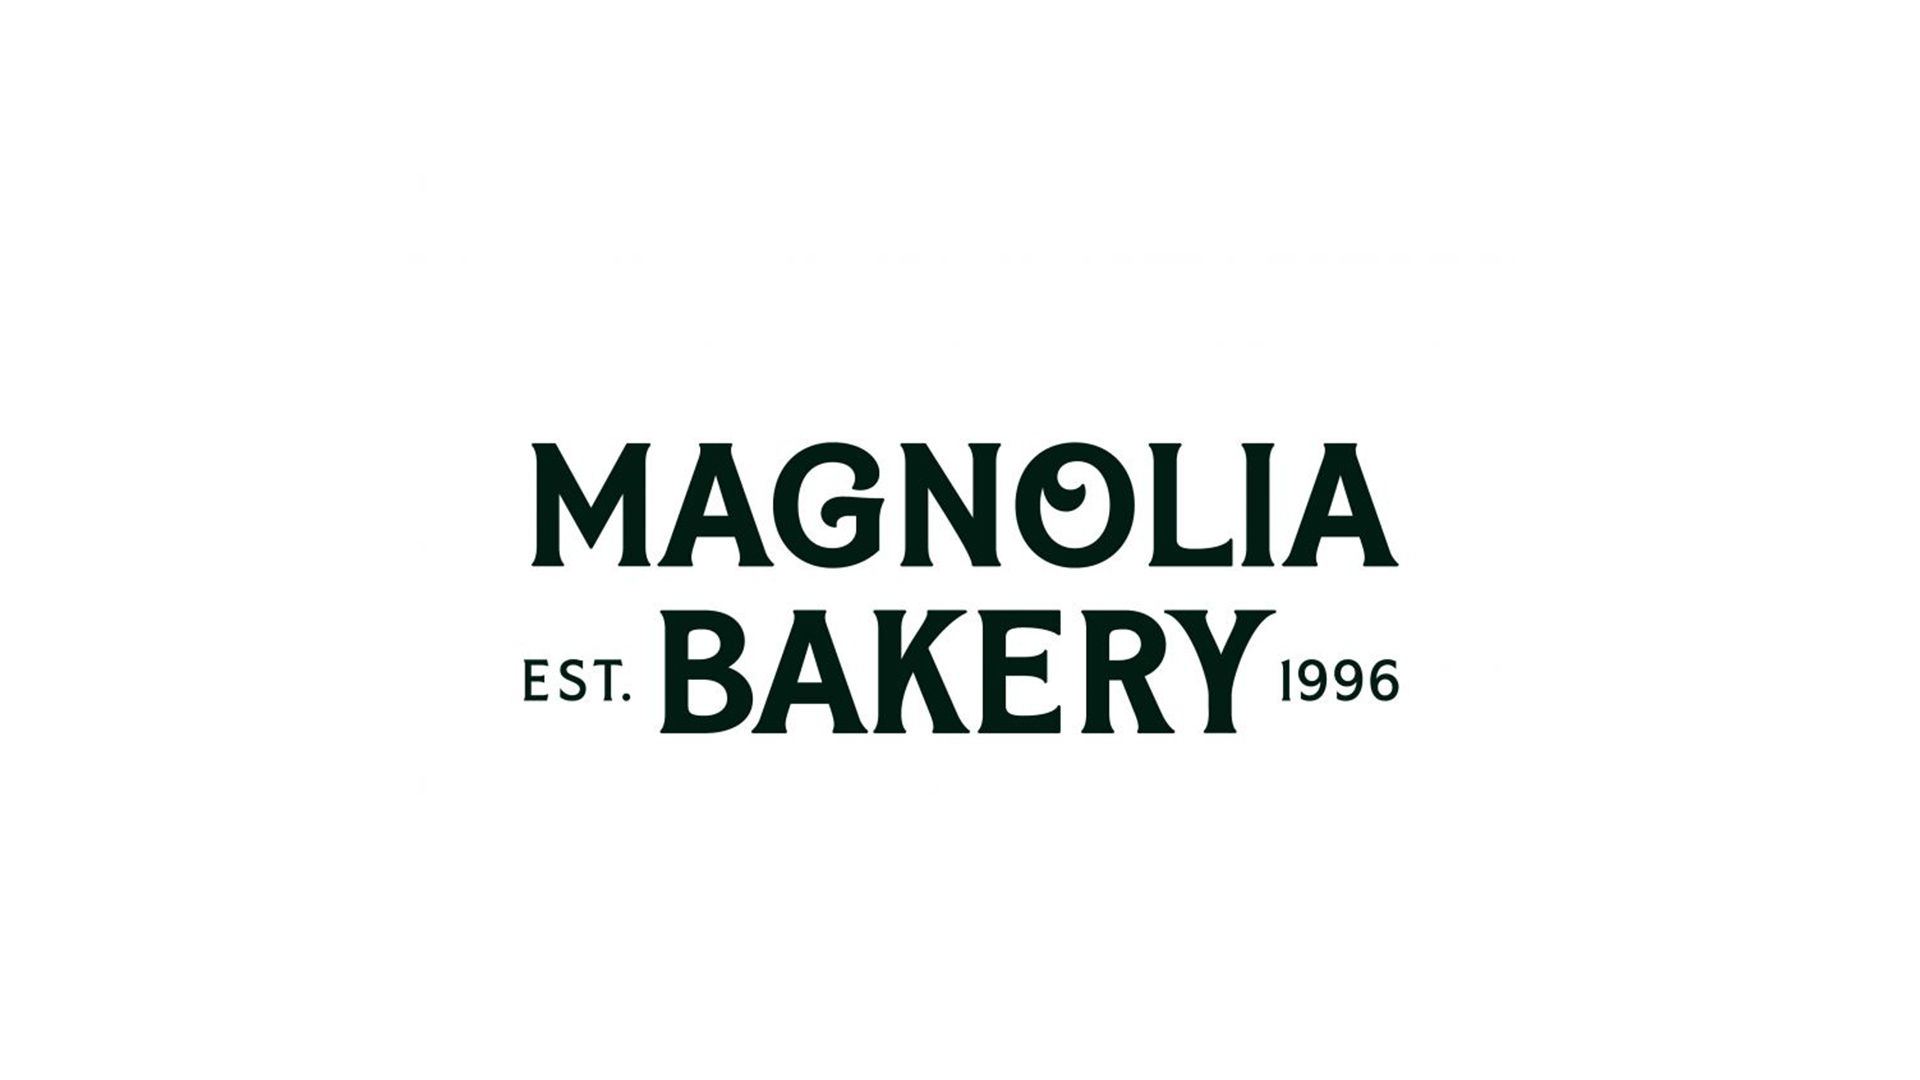 Magnolia Bakery, yeni mağazasını Antalya The Lands Of Legends’da açtı.